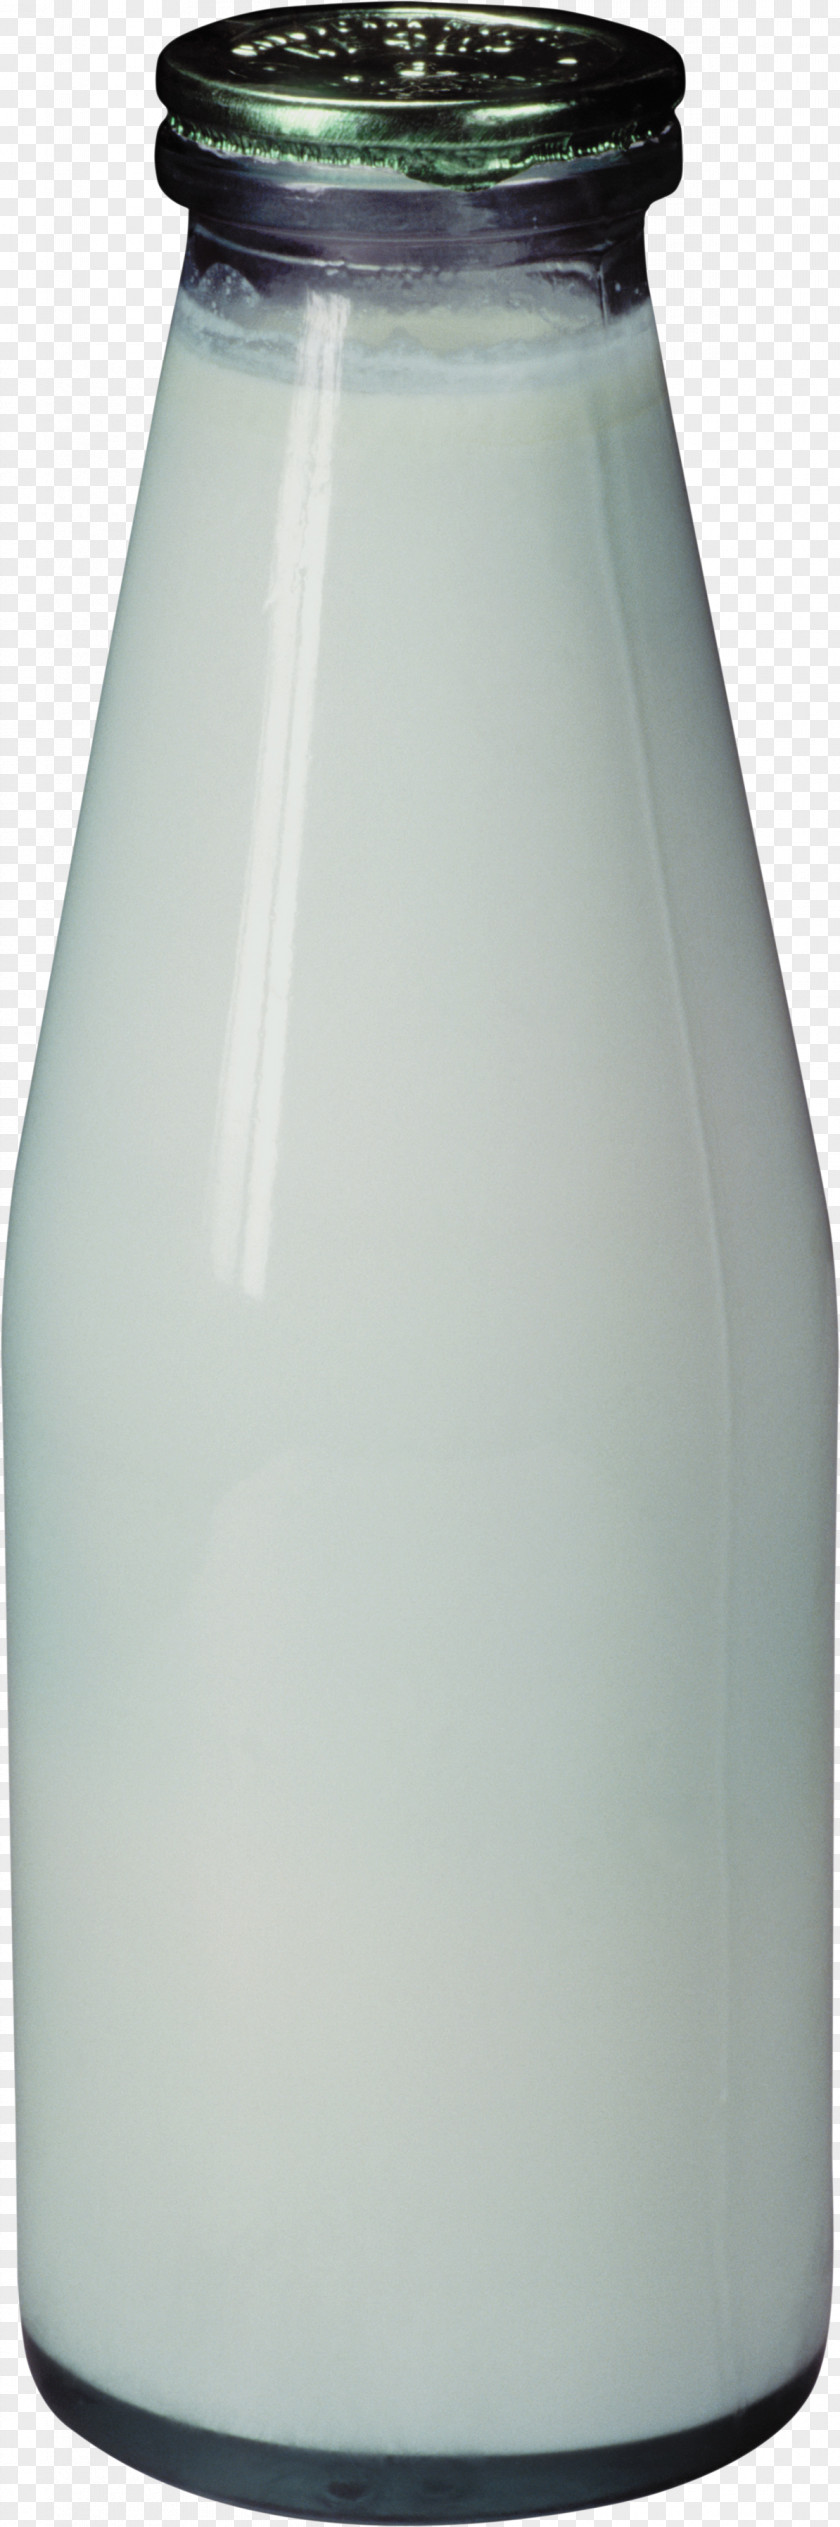 Kefir Bottle Glass Milk Clip Art PNG